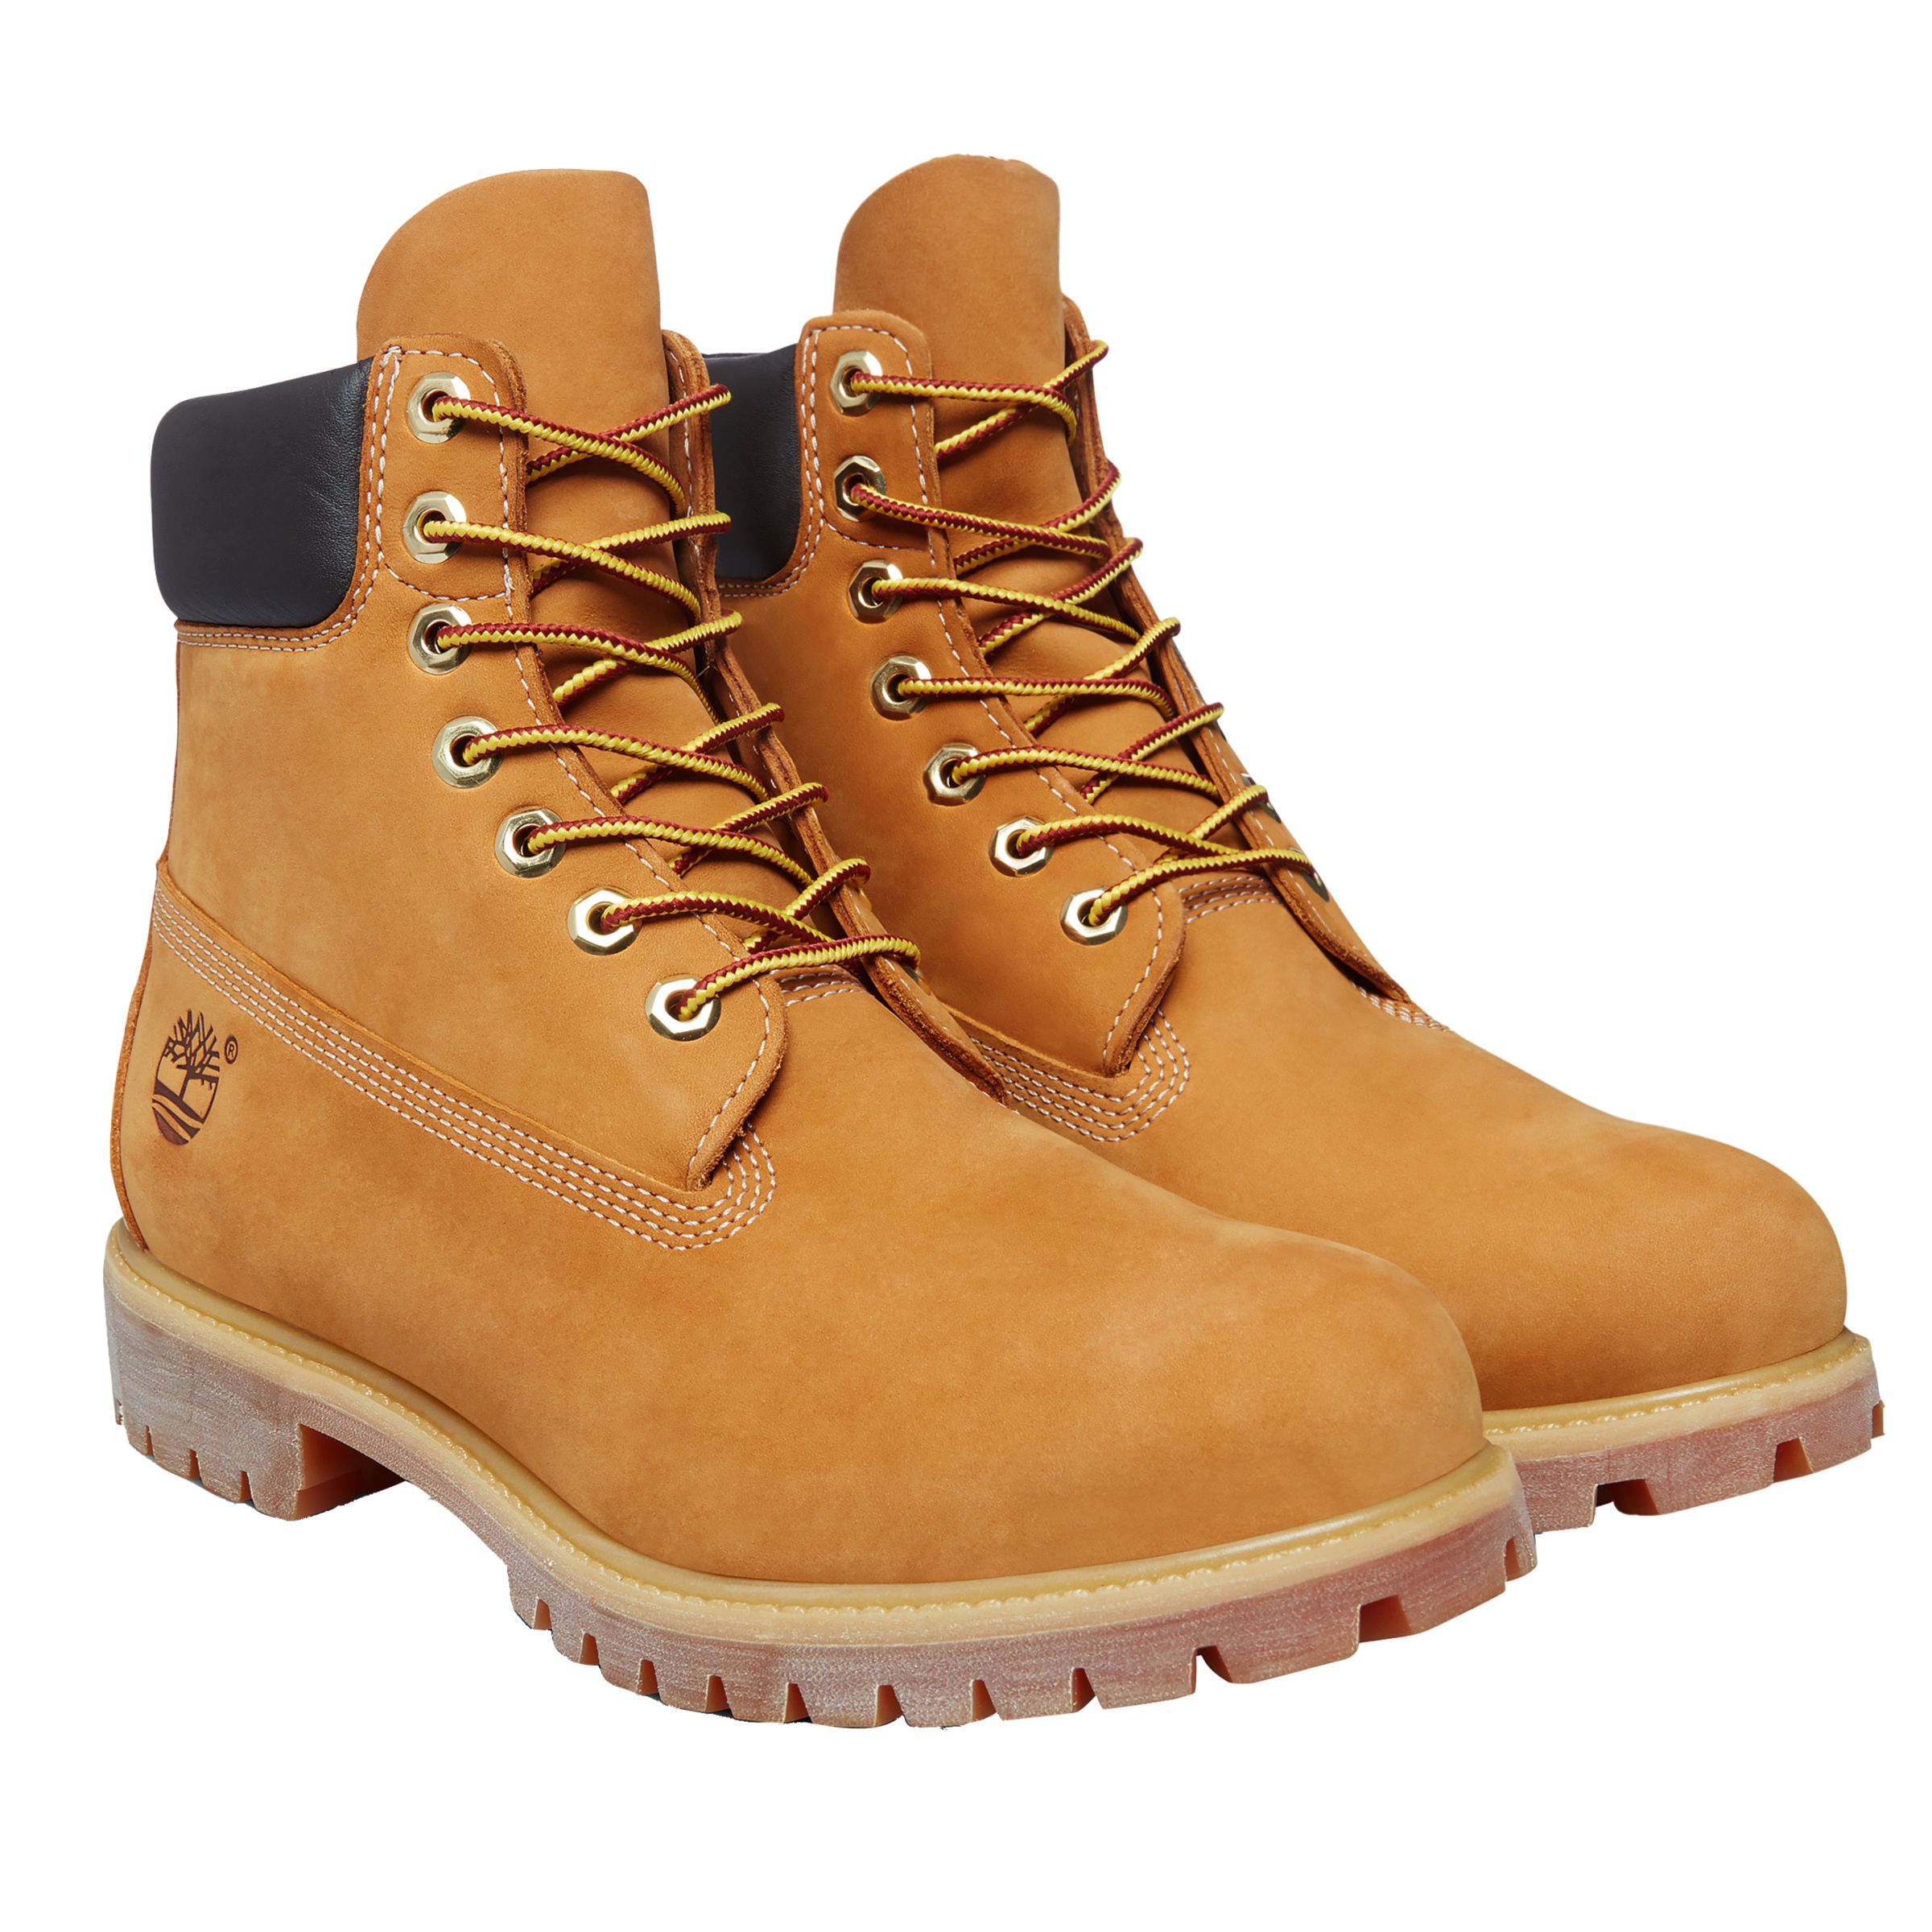 Timberland Classic 6-Inch Premium Waterproof Boots, Yellow